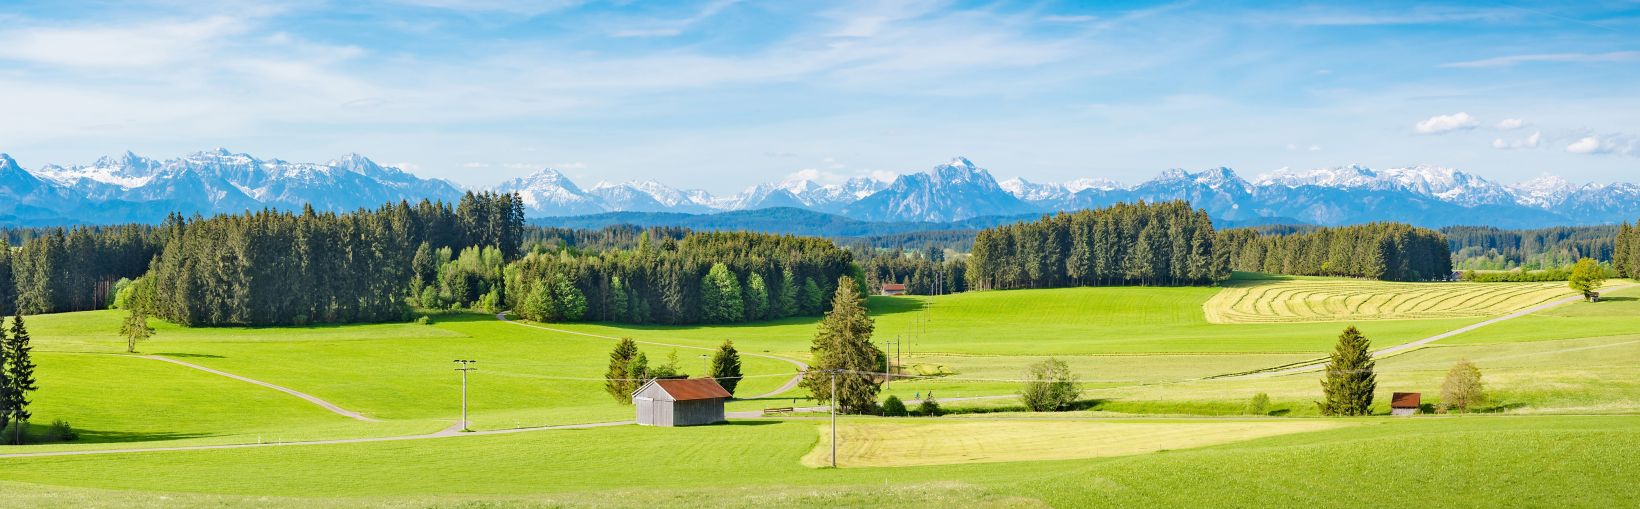 Allgäu, punased katusega taluhooned suurel rohelisel põldude ja metsa maastikul, mille horisondil on dramaatiline lumega kaetud mägede taust